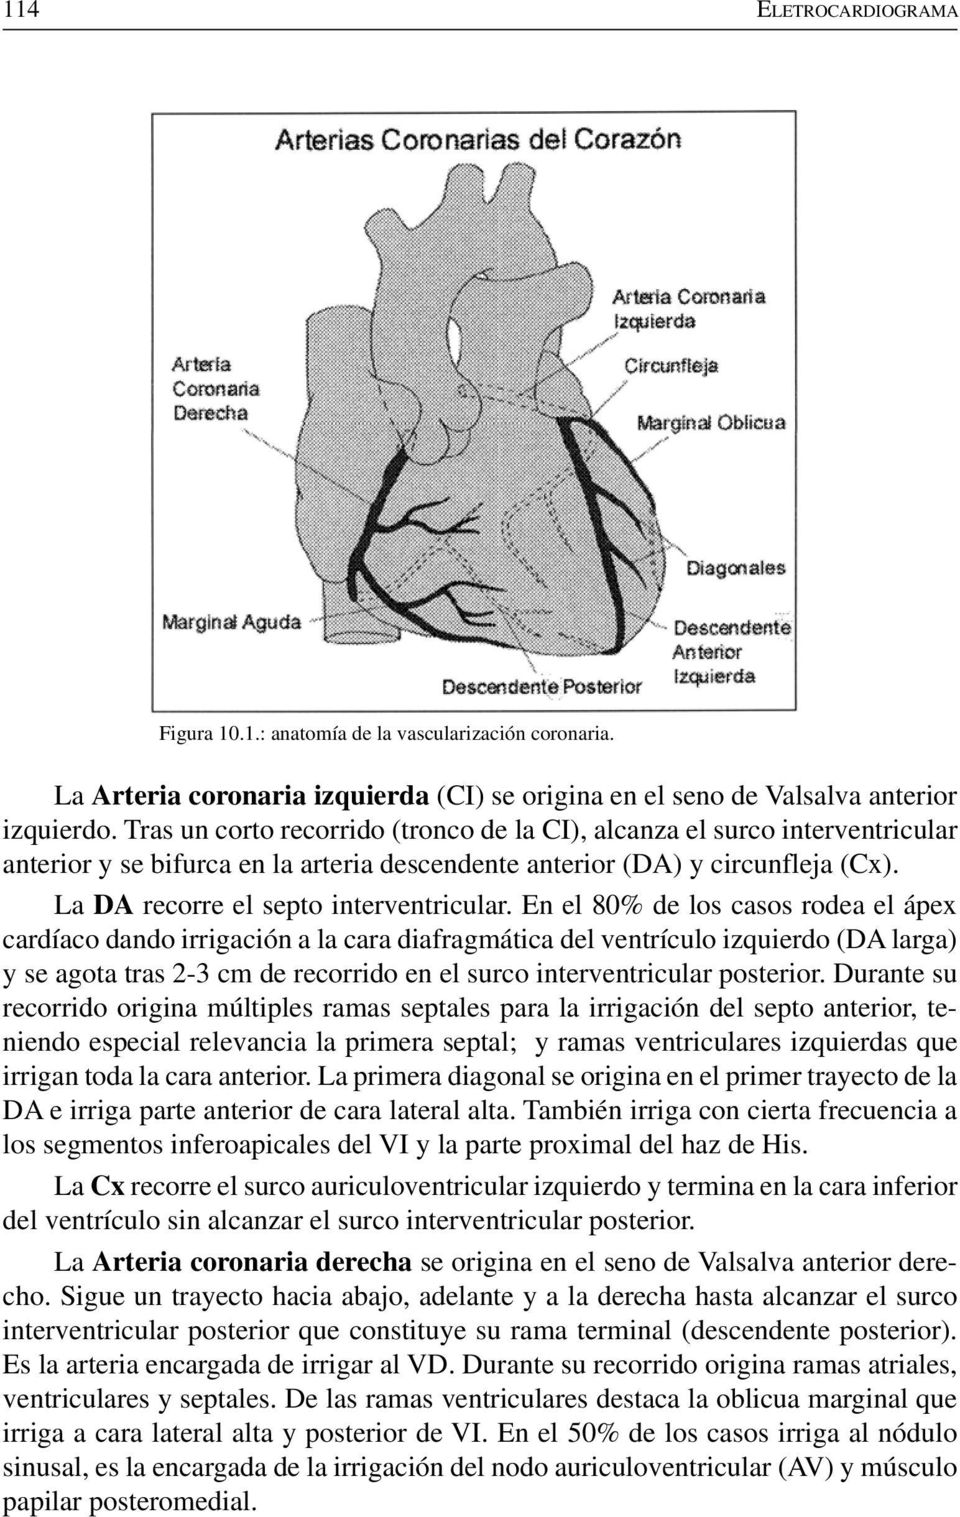 En el 80% de los casos rodea el ápex cardíaco dando irrigación a la cara diafragmática del ventrículo izquierdo (DA larga) y se agota tras 2-3 cm de recorrido en el surco interventricular posterior.